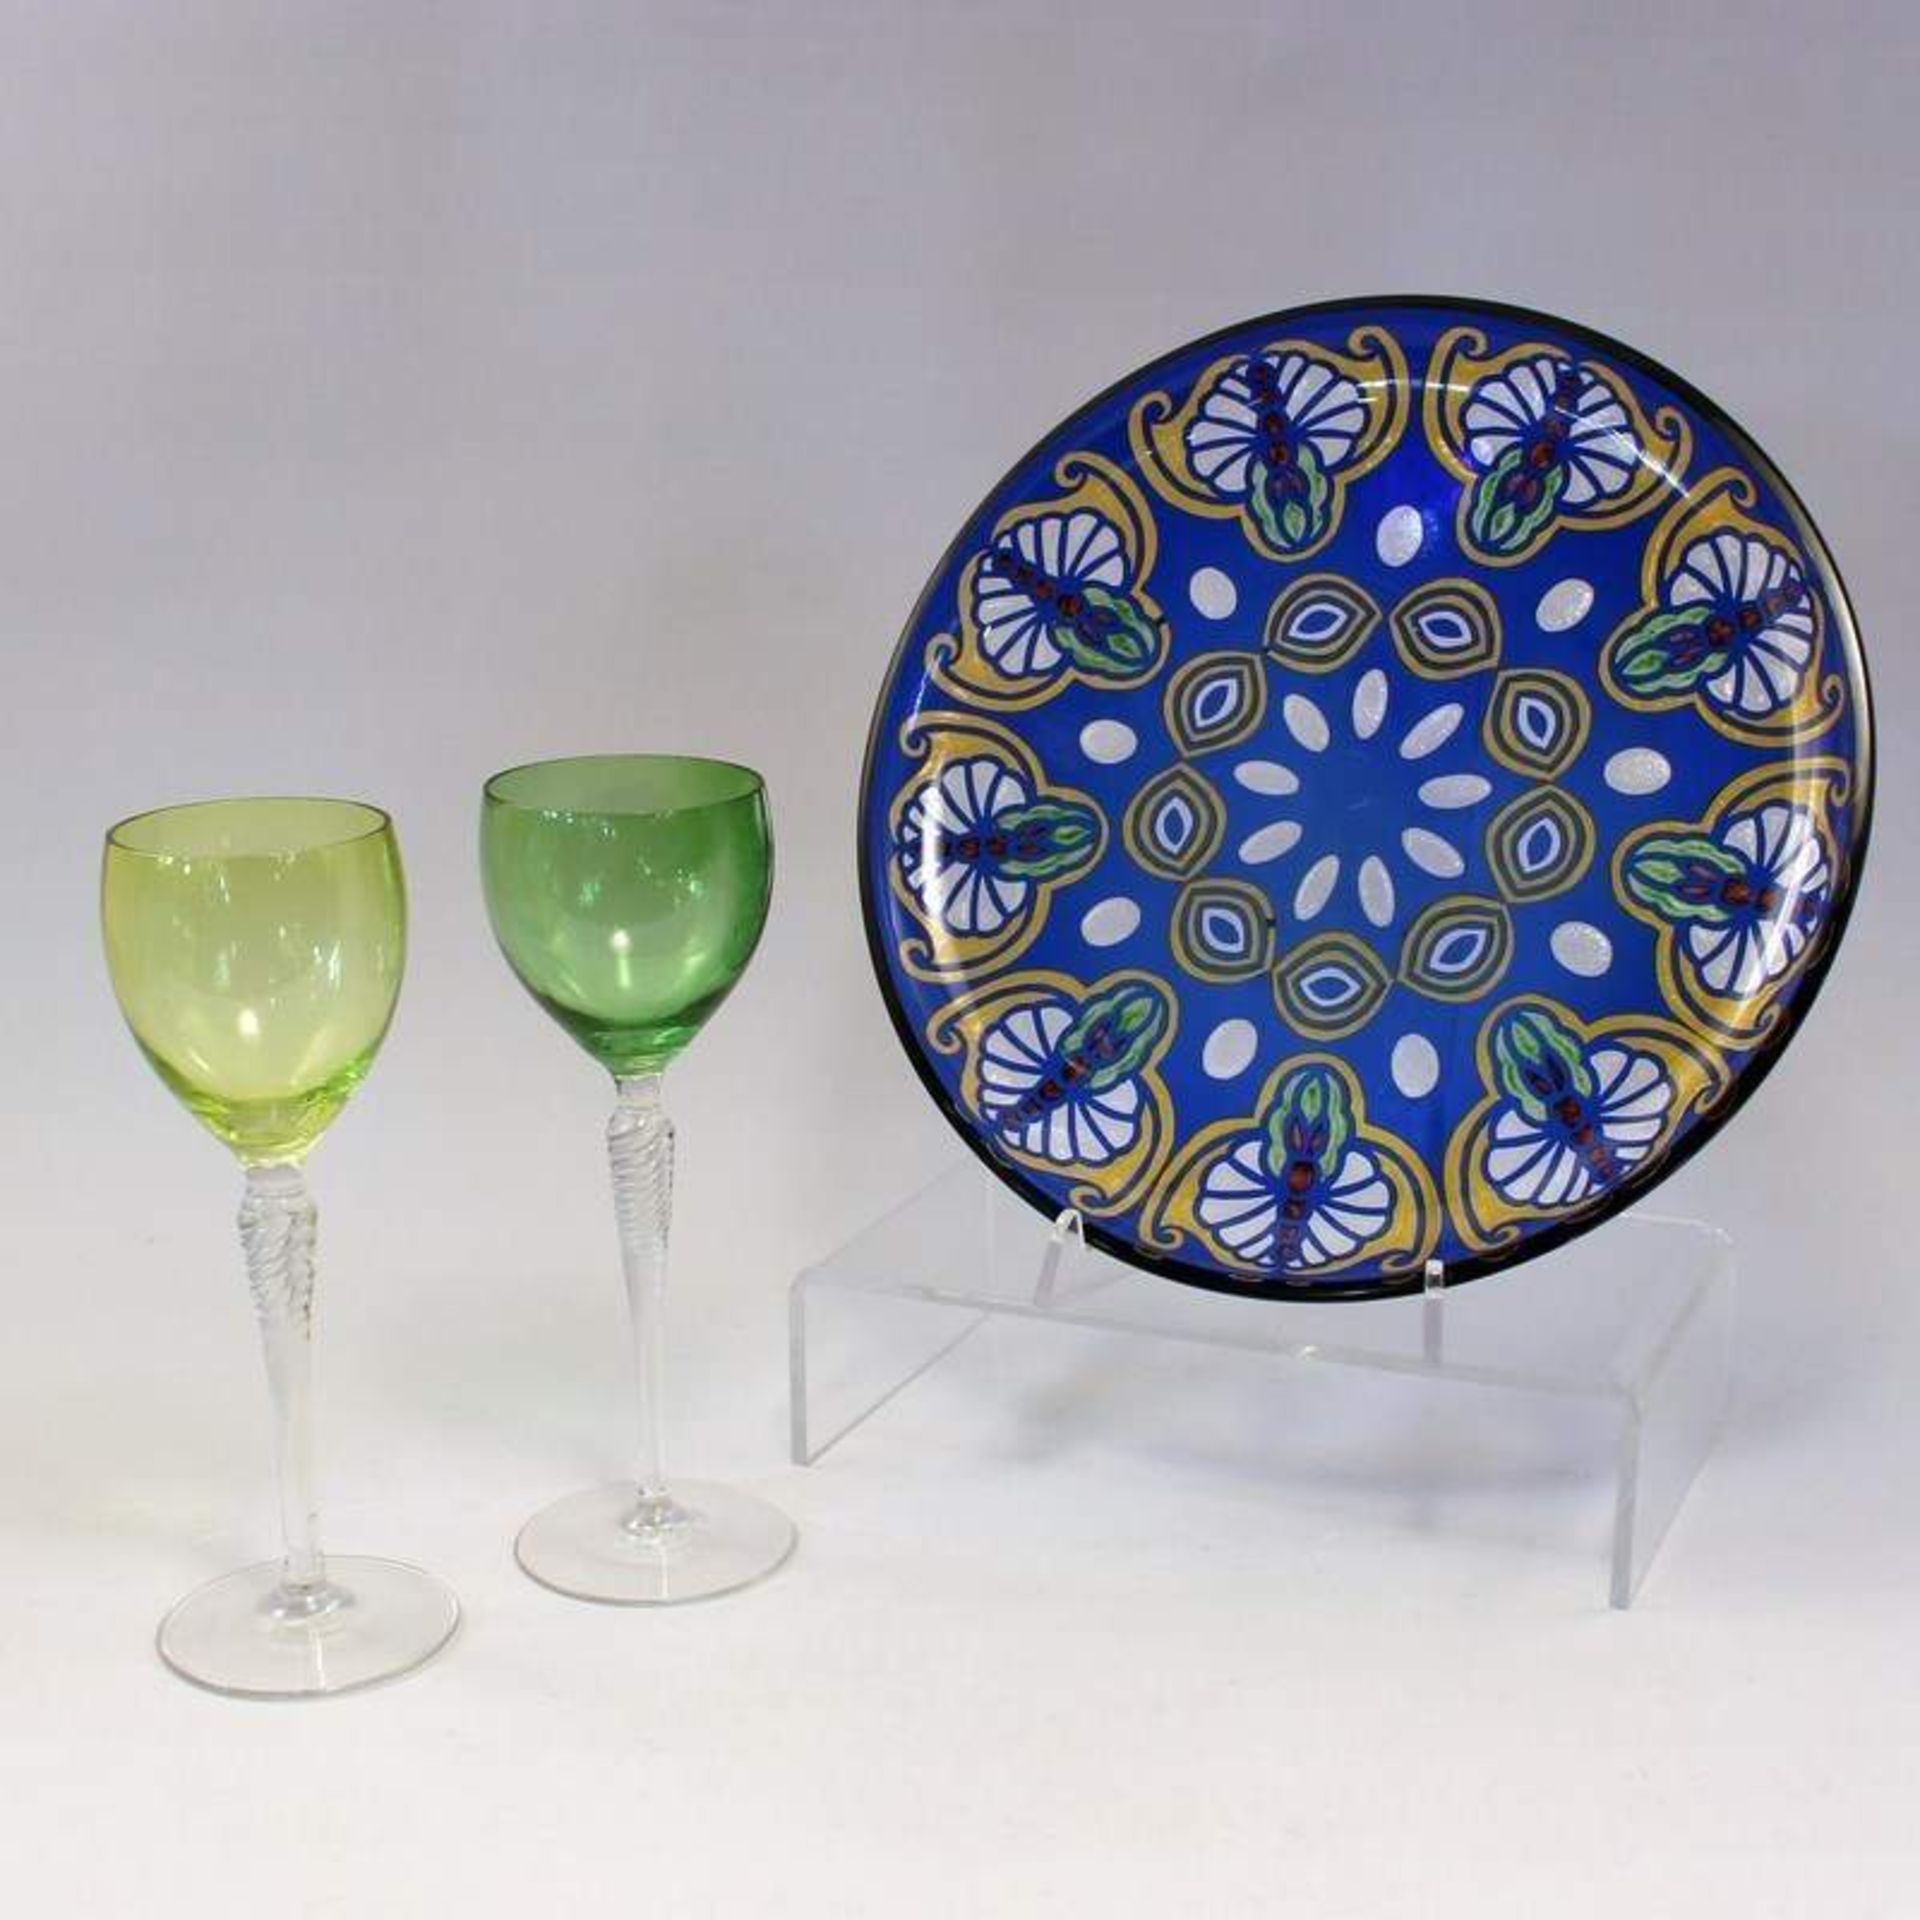 Loetz - Teller um 1900, wohl Loetz, farbloses Glas, blau überfangen, Schliffdekor polychrom